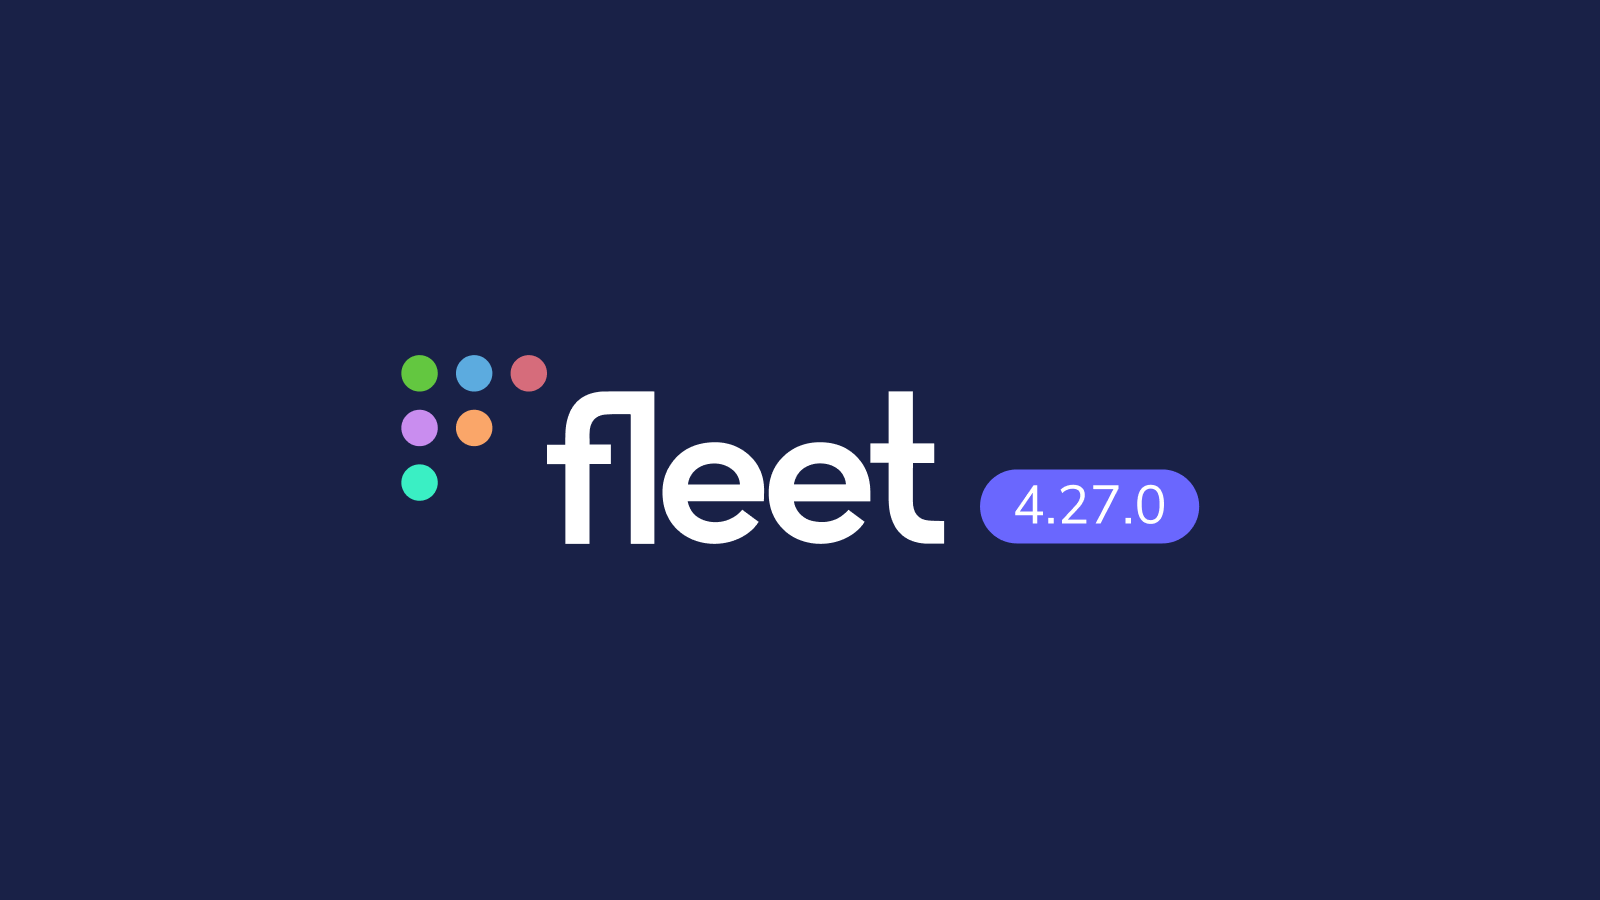 Fleet 4.27.0